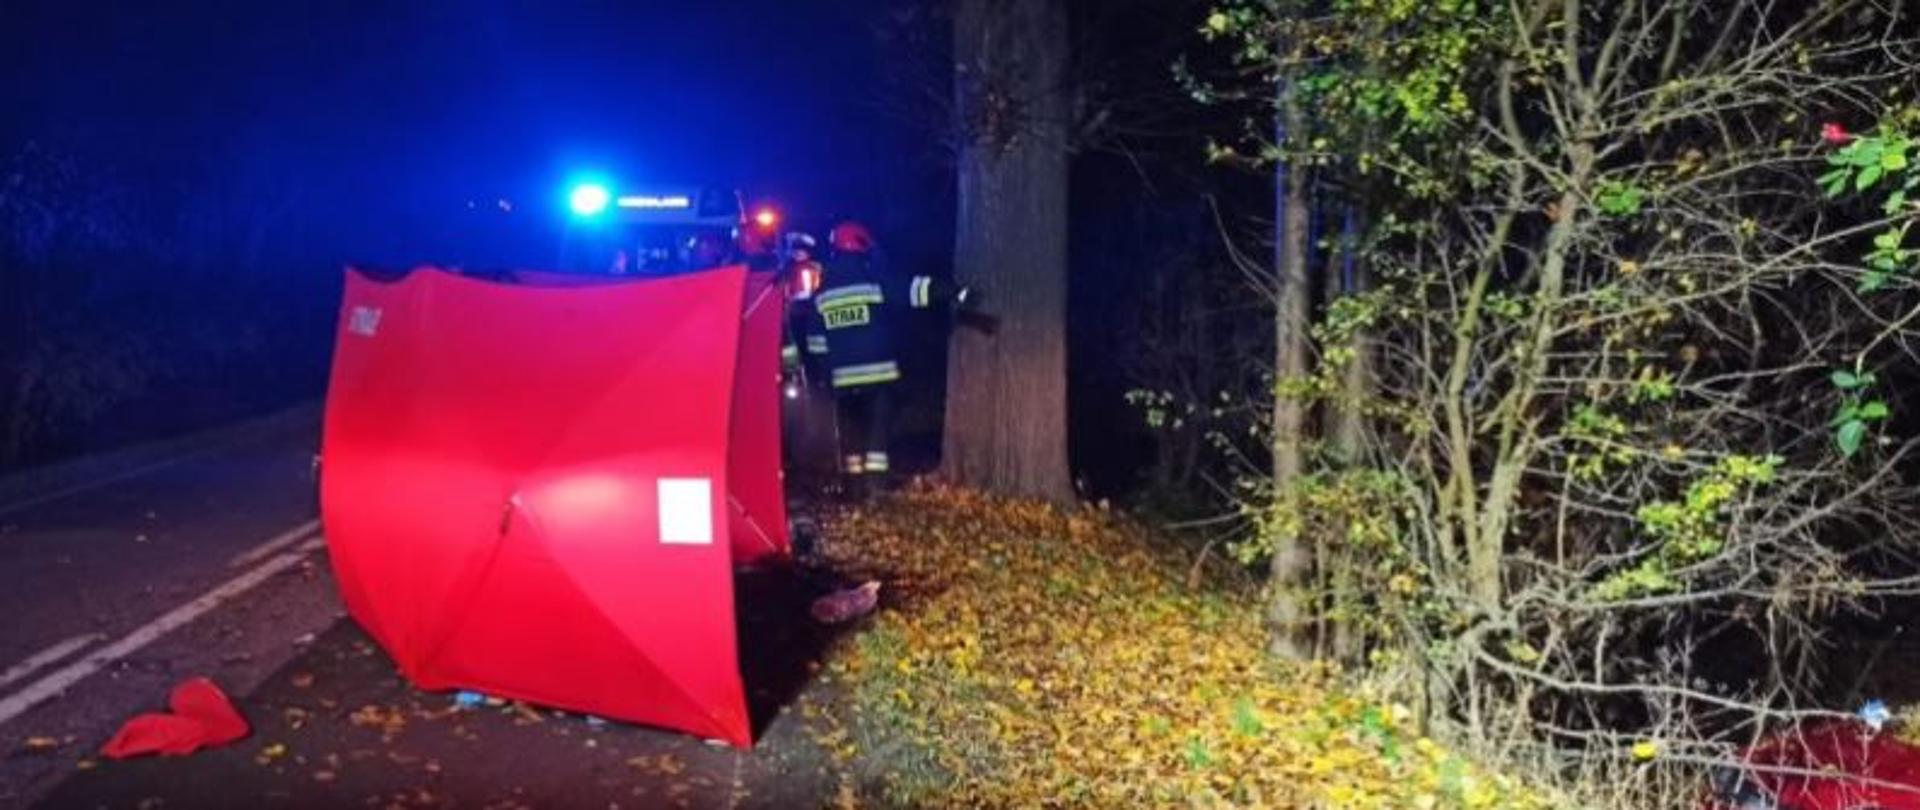 Zdjęcie przedstawia rozstawiony na drodze parawan strażacki, w miejscu w którym doszło do wypadku. Za nim widać pojazd strażacki w włączonymi światłami alarmowymi. Po prawej stronie widoczny jest w rowie czerwony pojazd, który uległ wypadkowi.